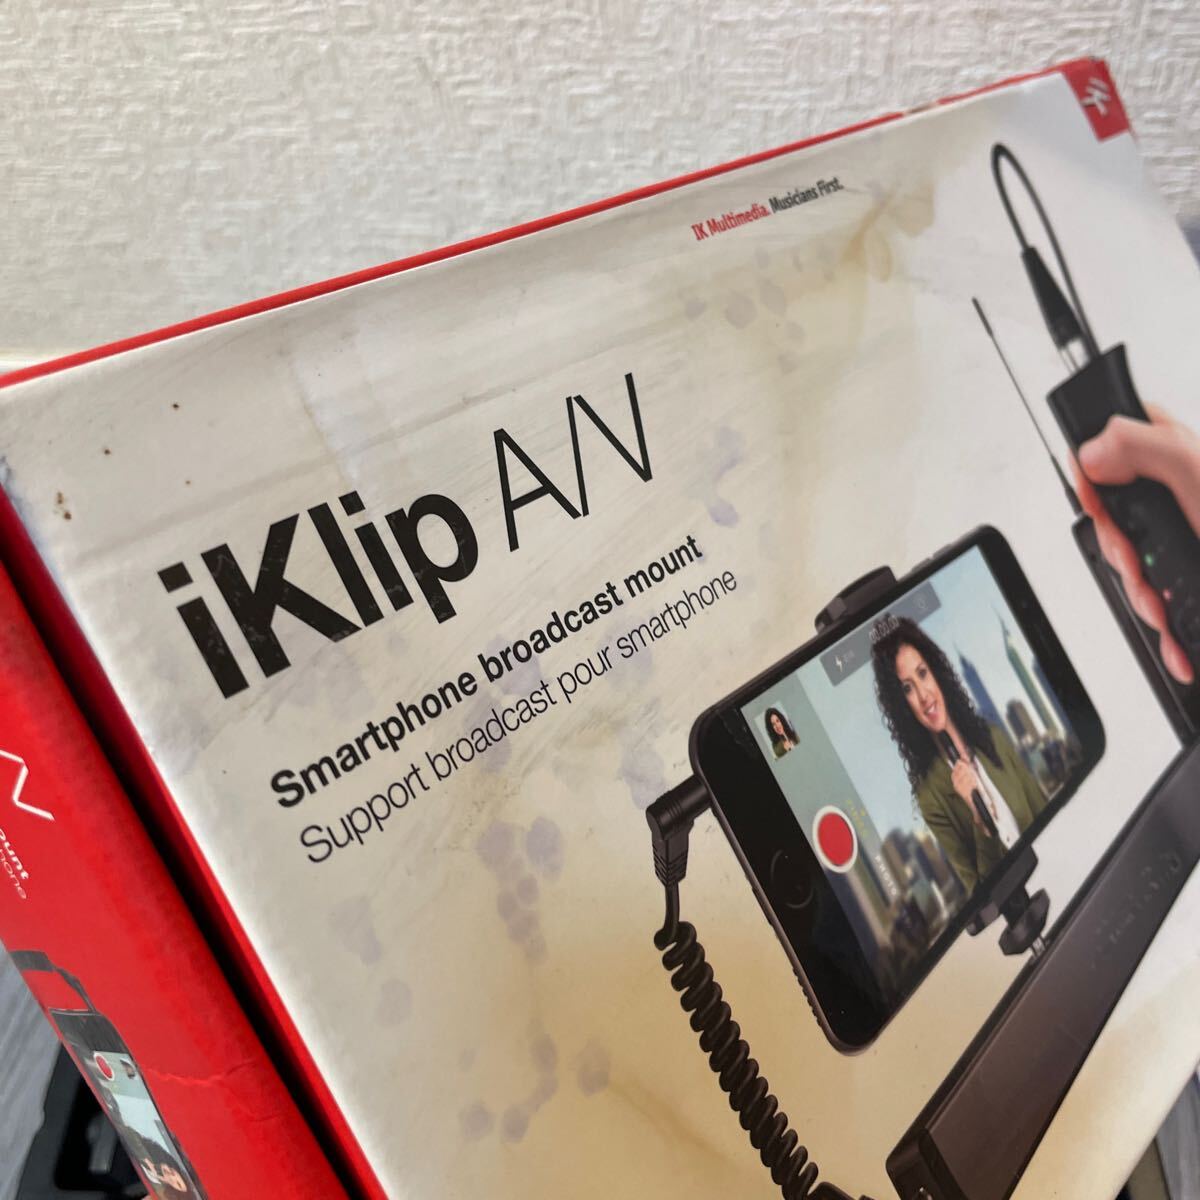 IK Multimedia i Klip A/V スマートフォンブロードキャストmount 撮影用機器　海外メーカー_画像7